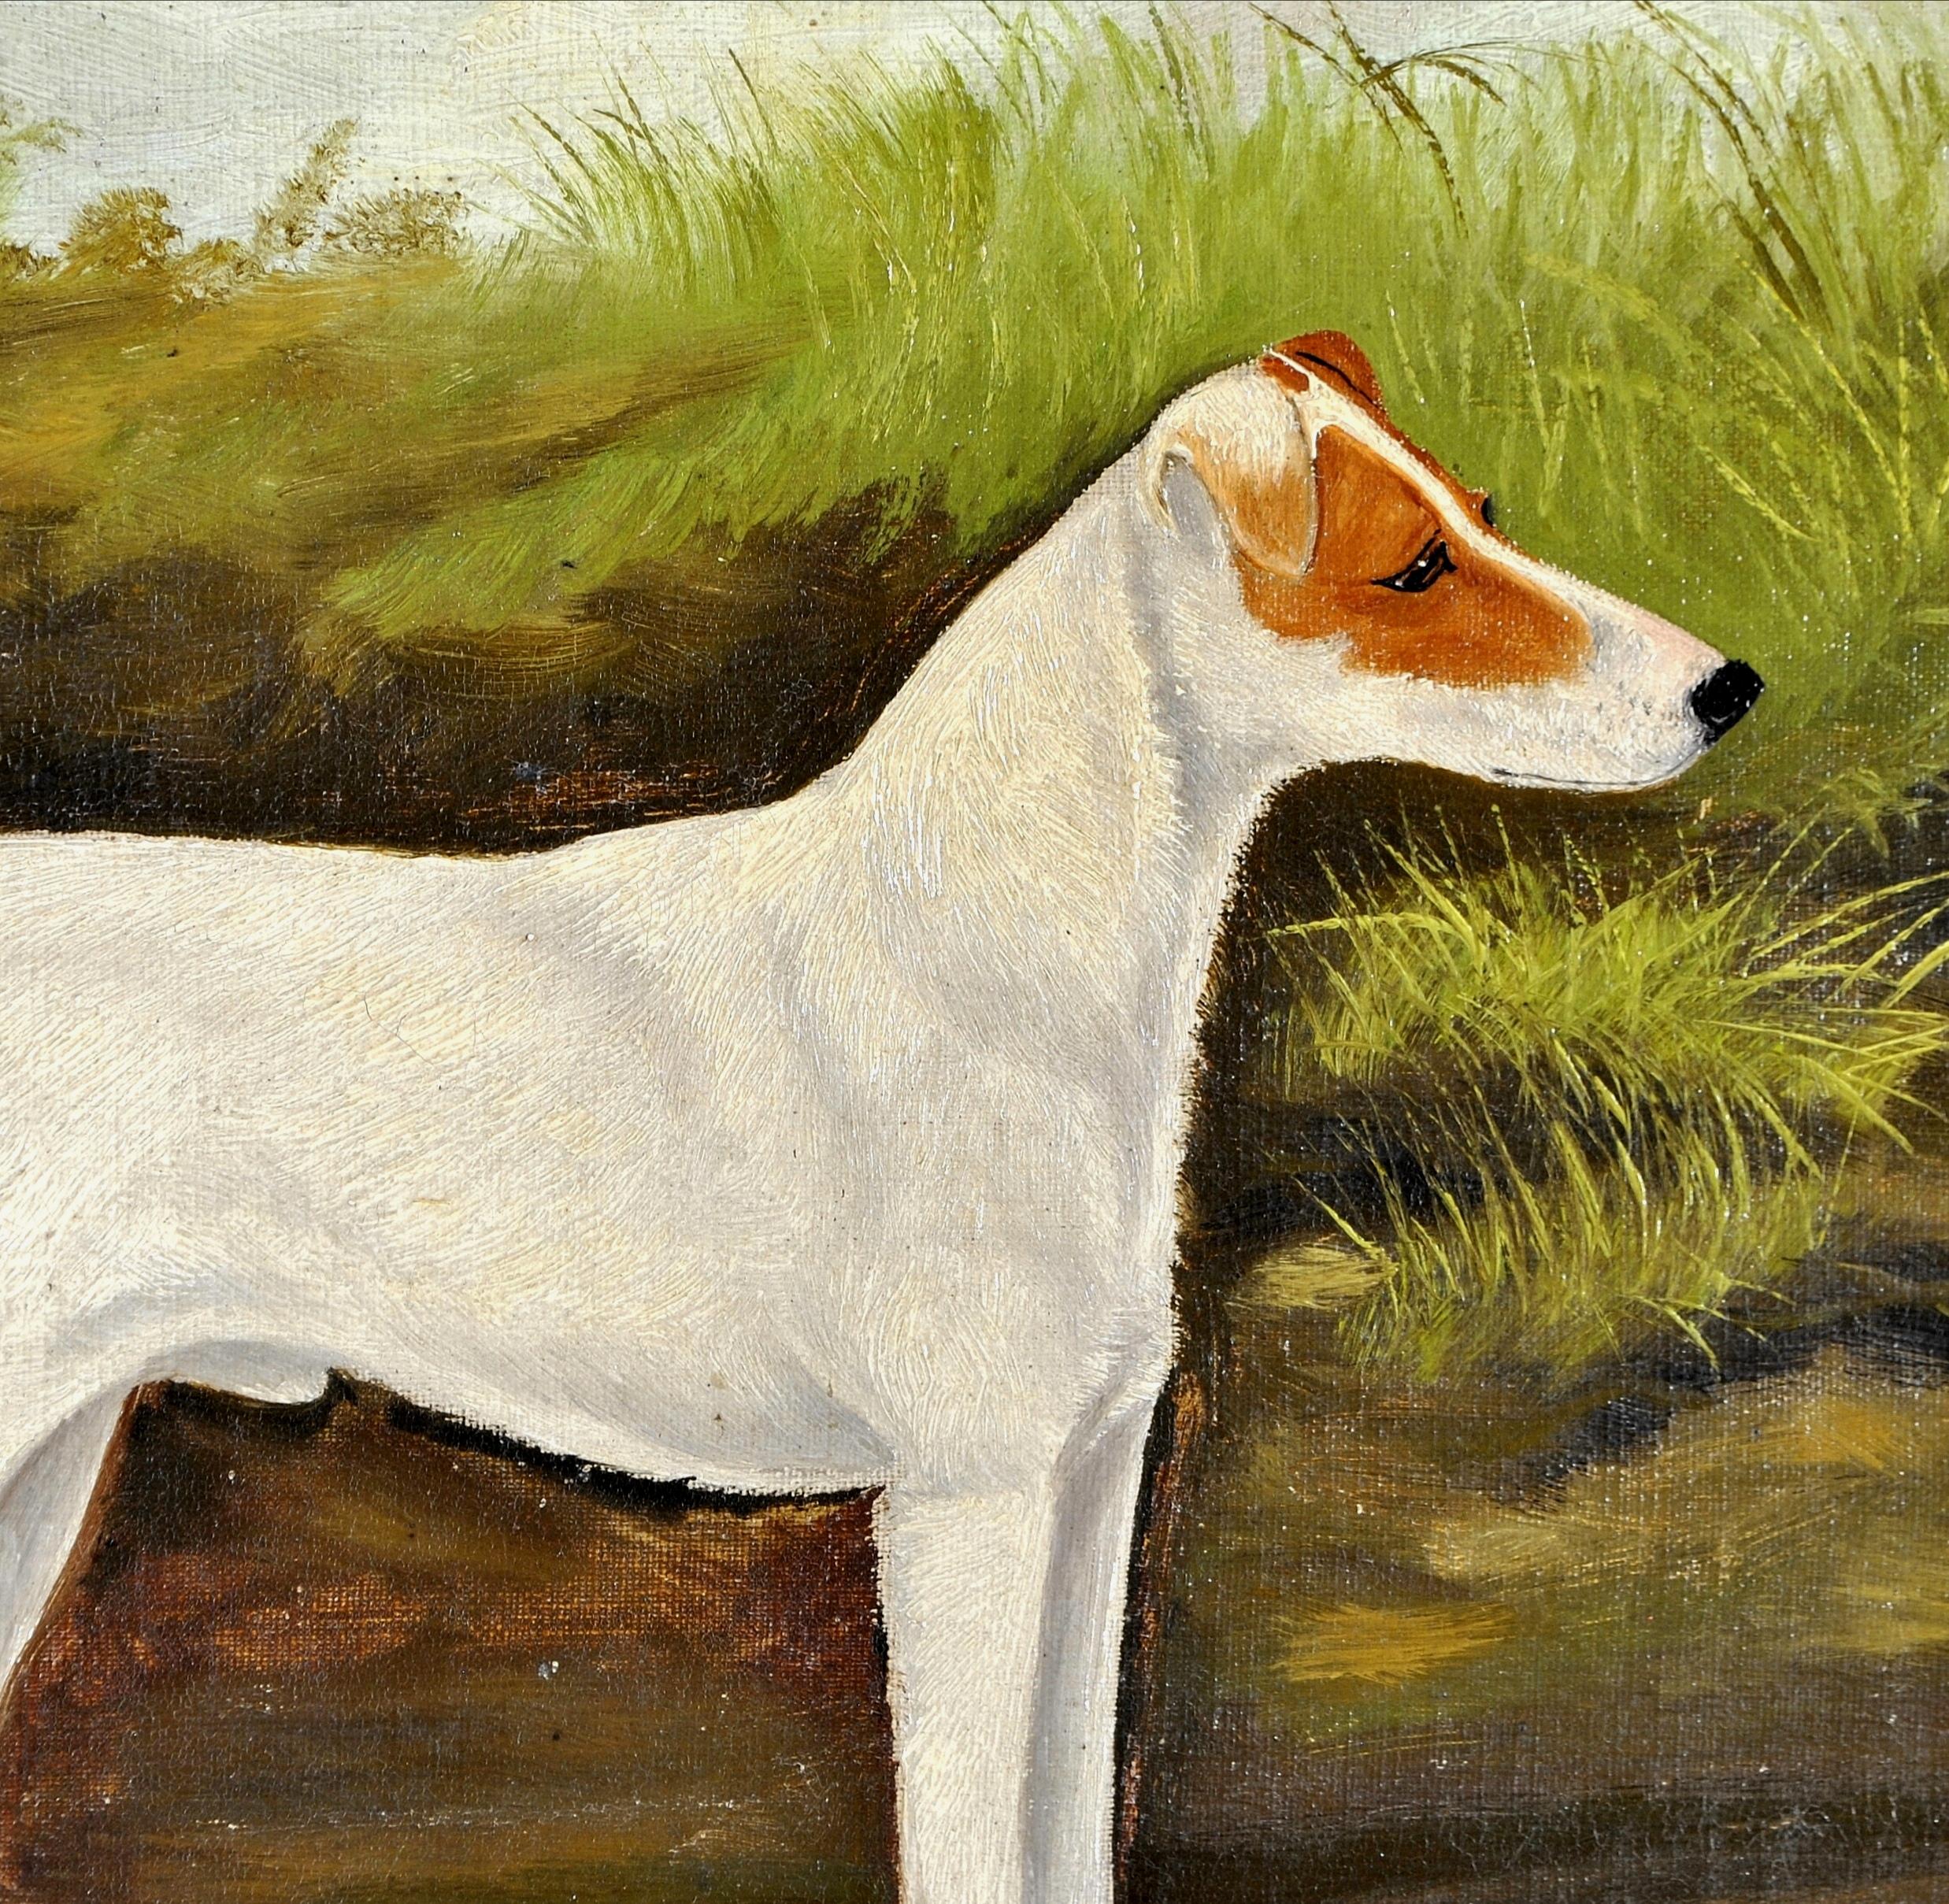 Ein schönes signiertes und datiertes 1896 Öl auf Leinwand Porträt eines Terrierhundes in einer Landschaft, von A. Stevenson. Einer von einem Paar, das wir heute auf 1stDibs zum Verkauf anbieten.

A. Stevenson war ein erfolgreicher Maler von Hunden